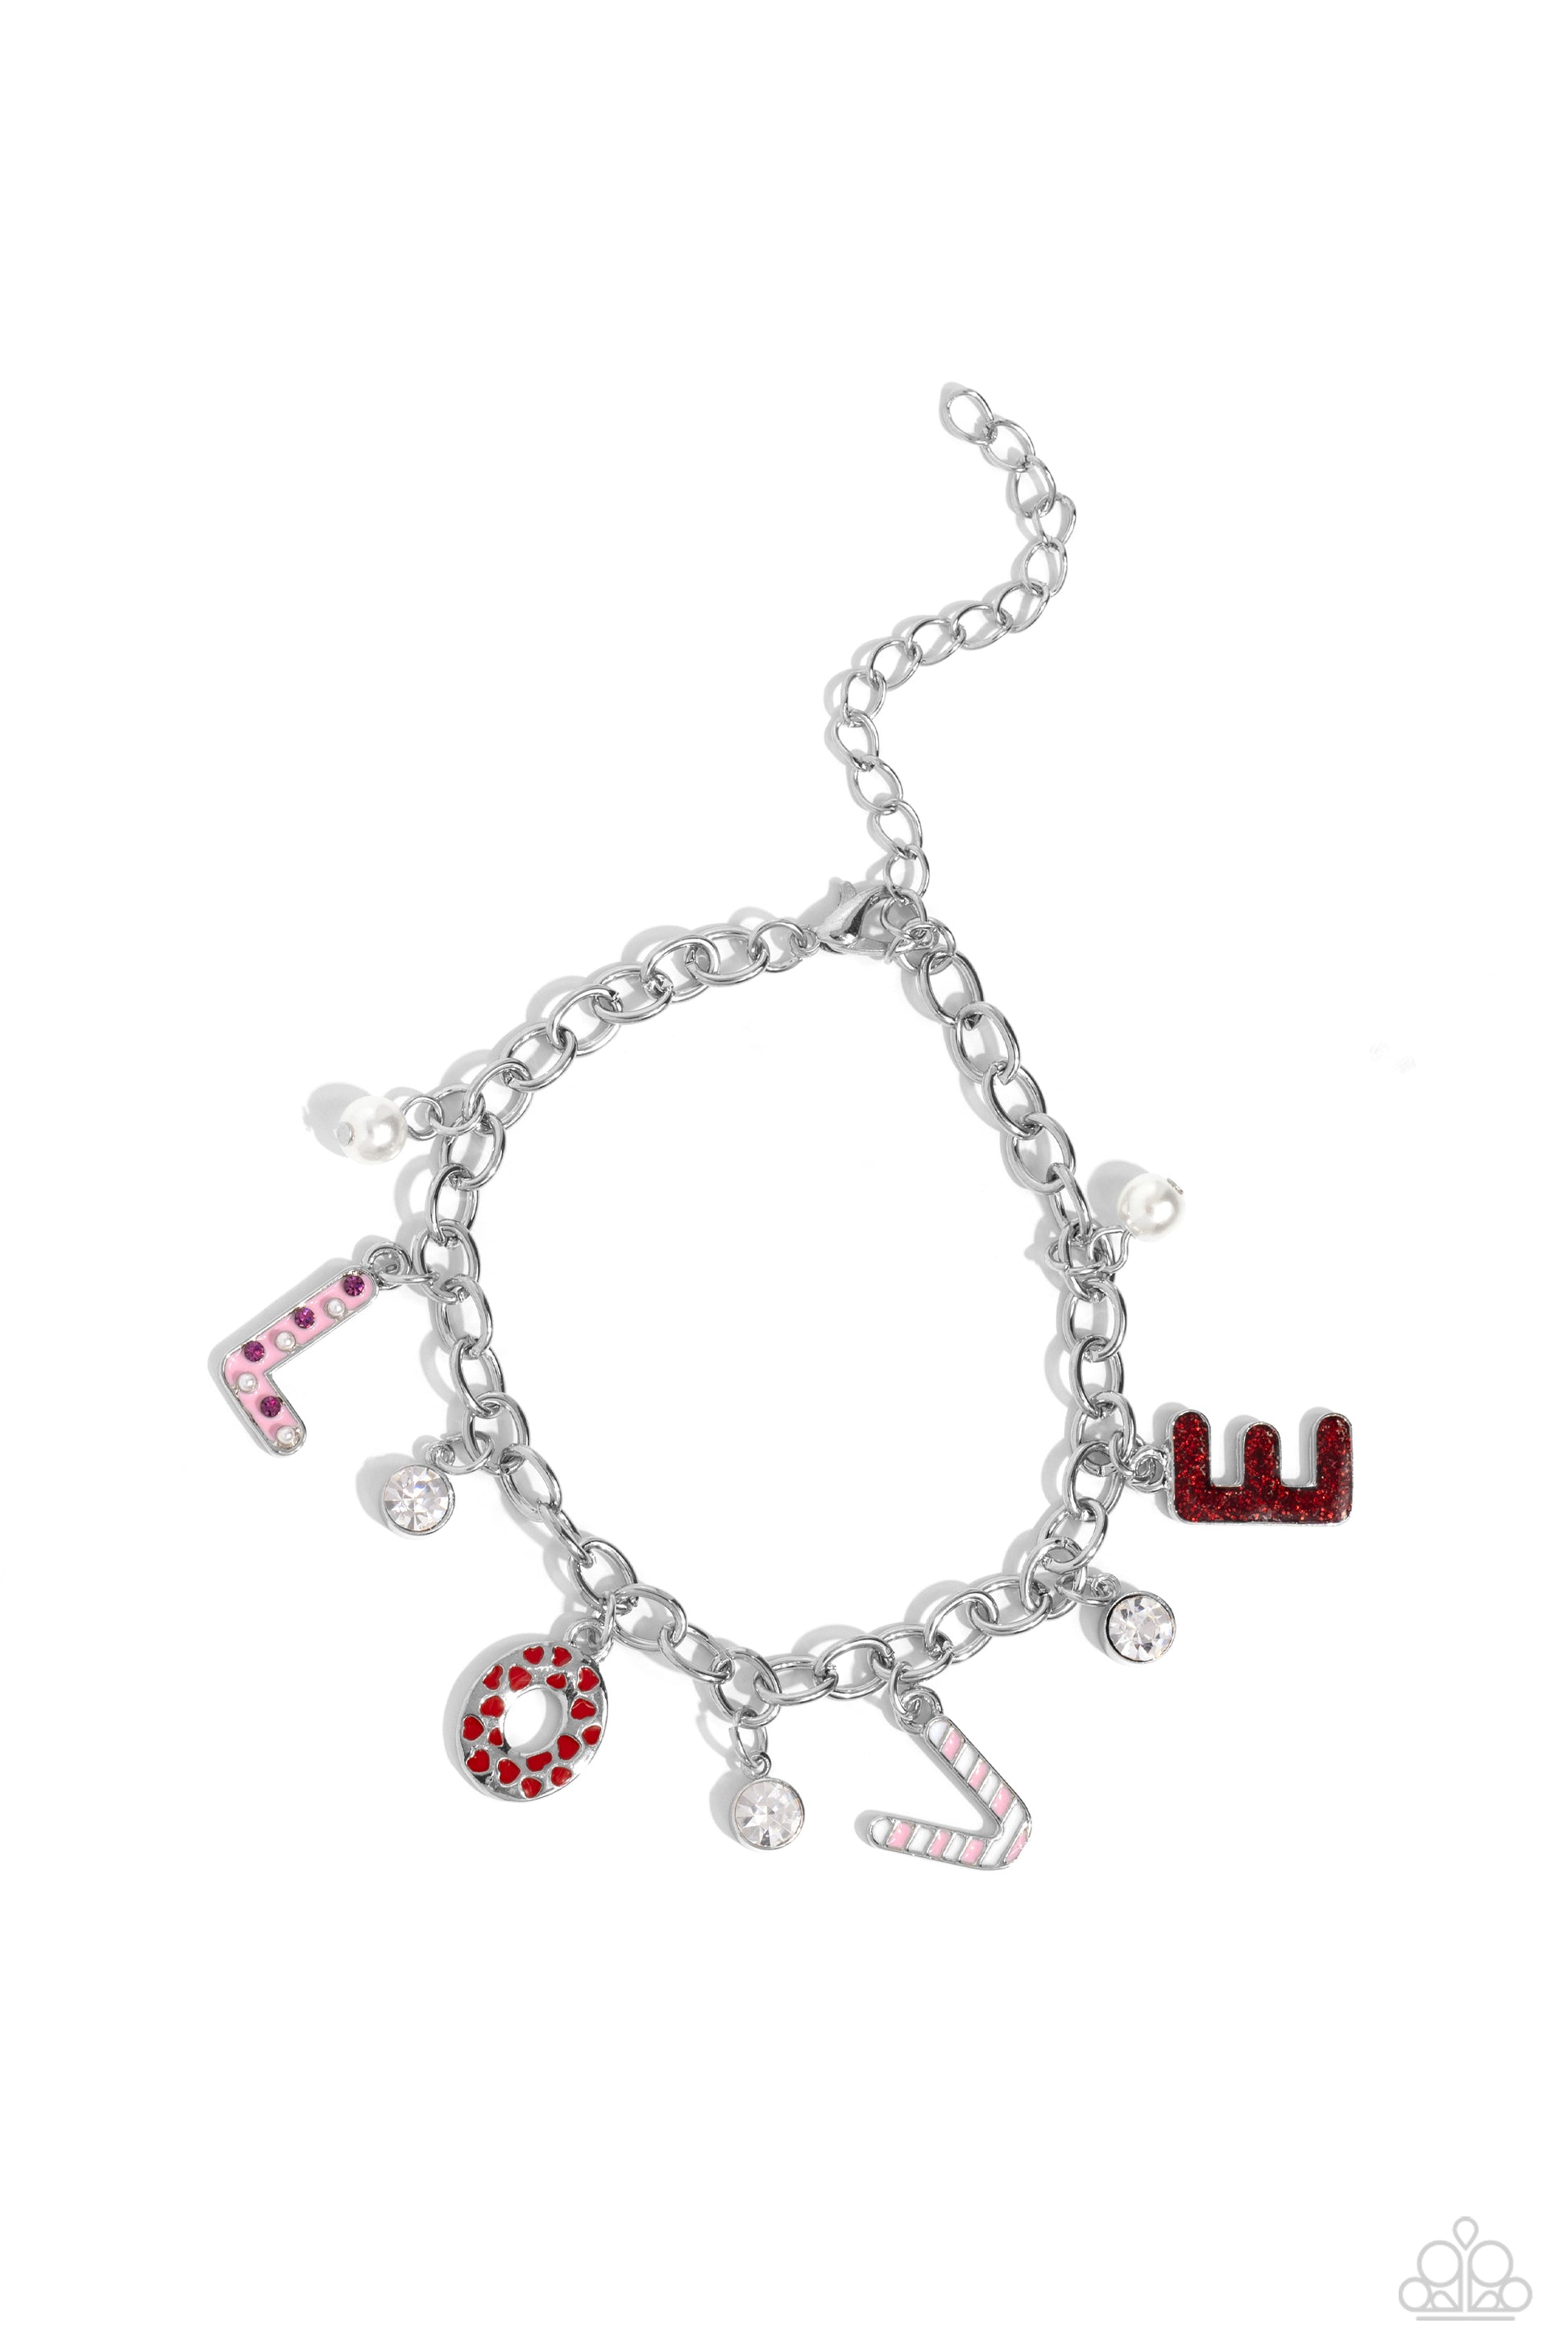 Lovestruck Leisure Pink Bracelet - Jewelry by Bretta